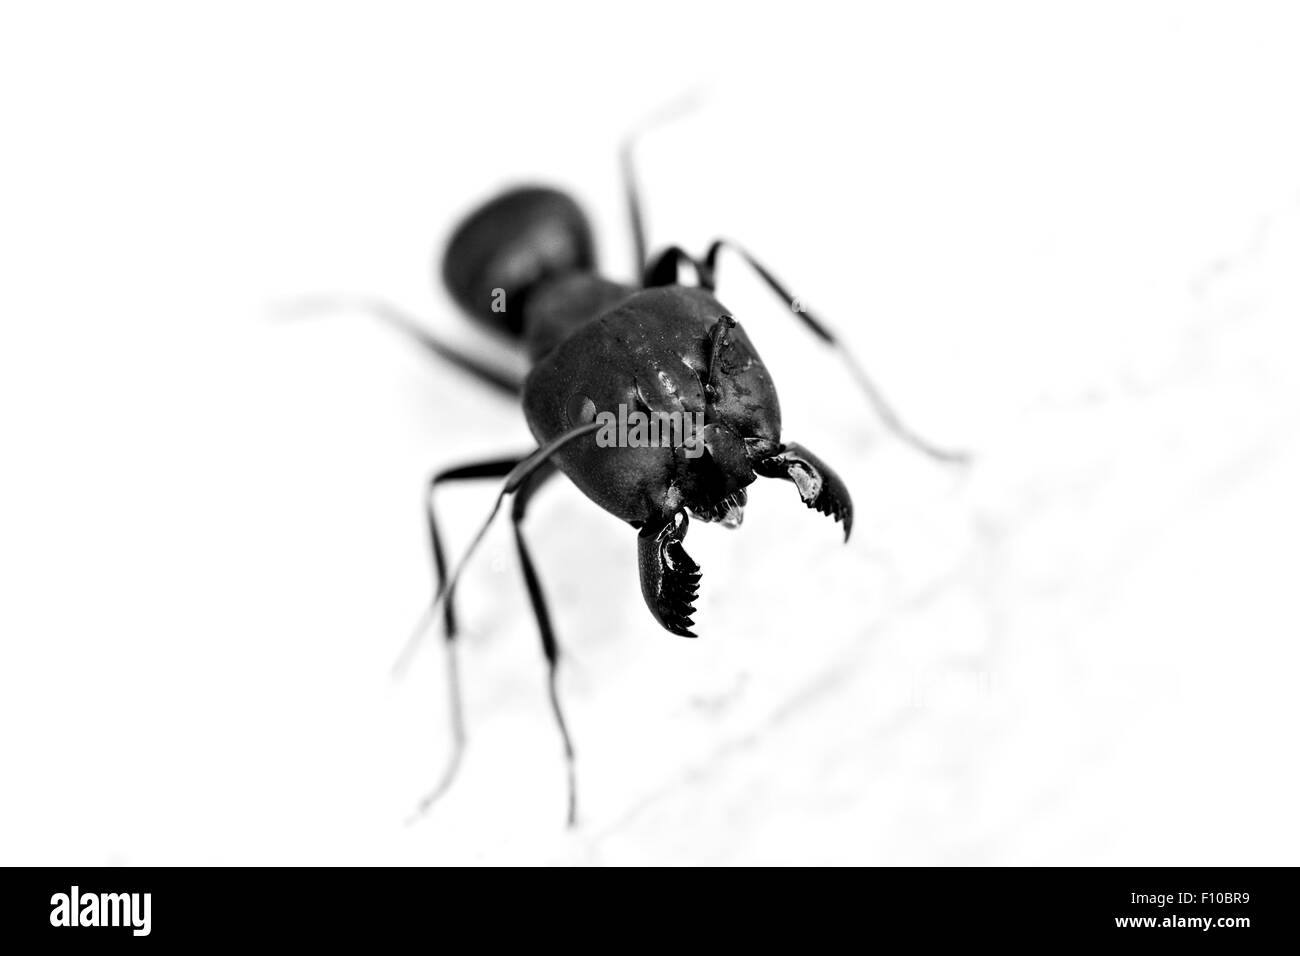 Gros plan d'une fourmi (Camponotus spp.) ou de sucre Ant avec une fracture antena Banque D'Images